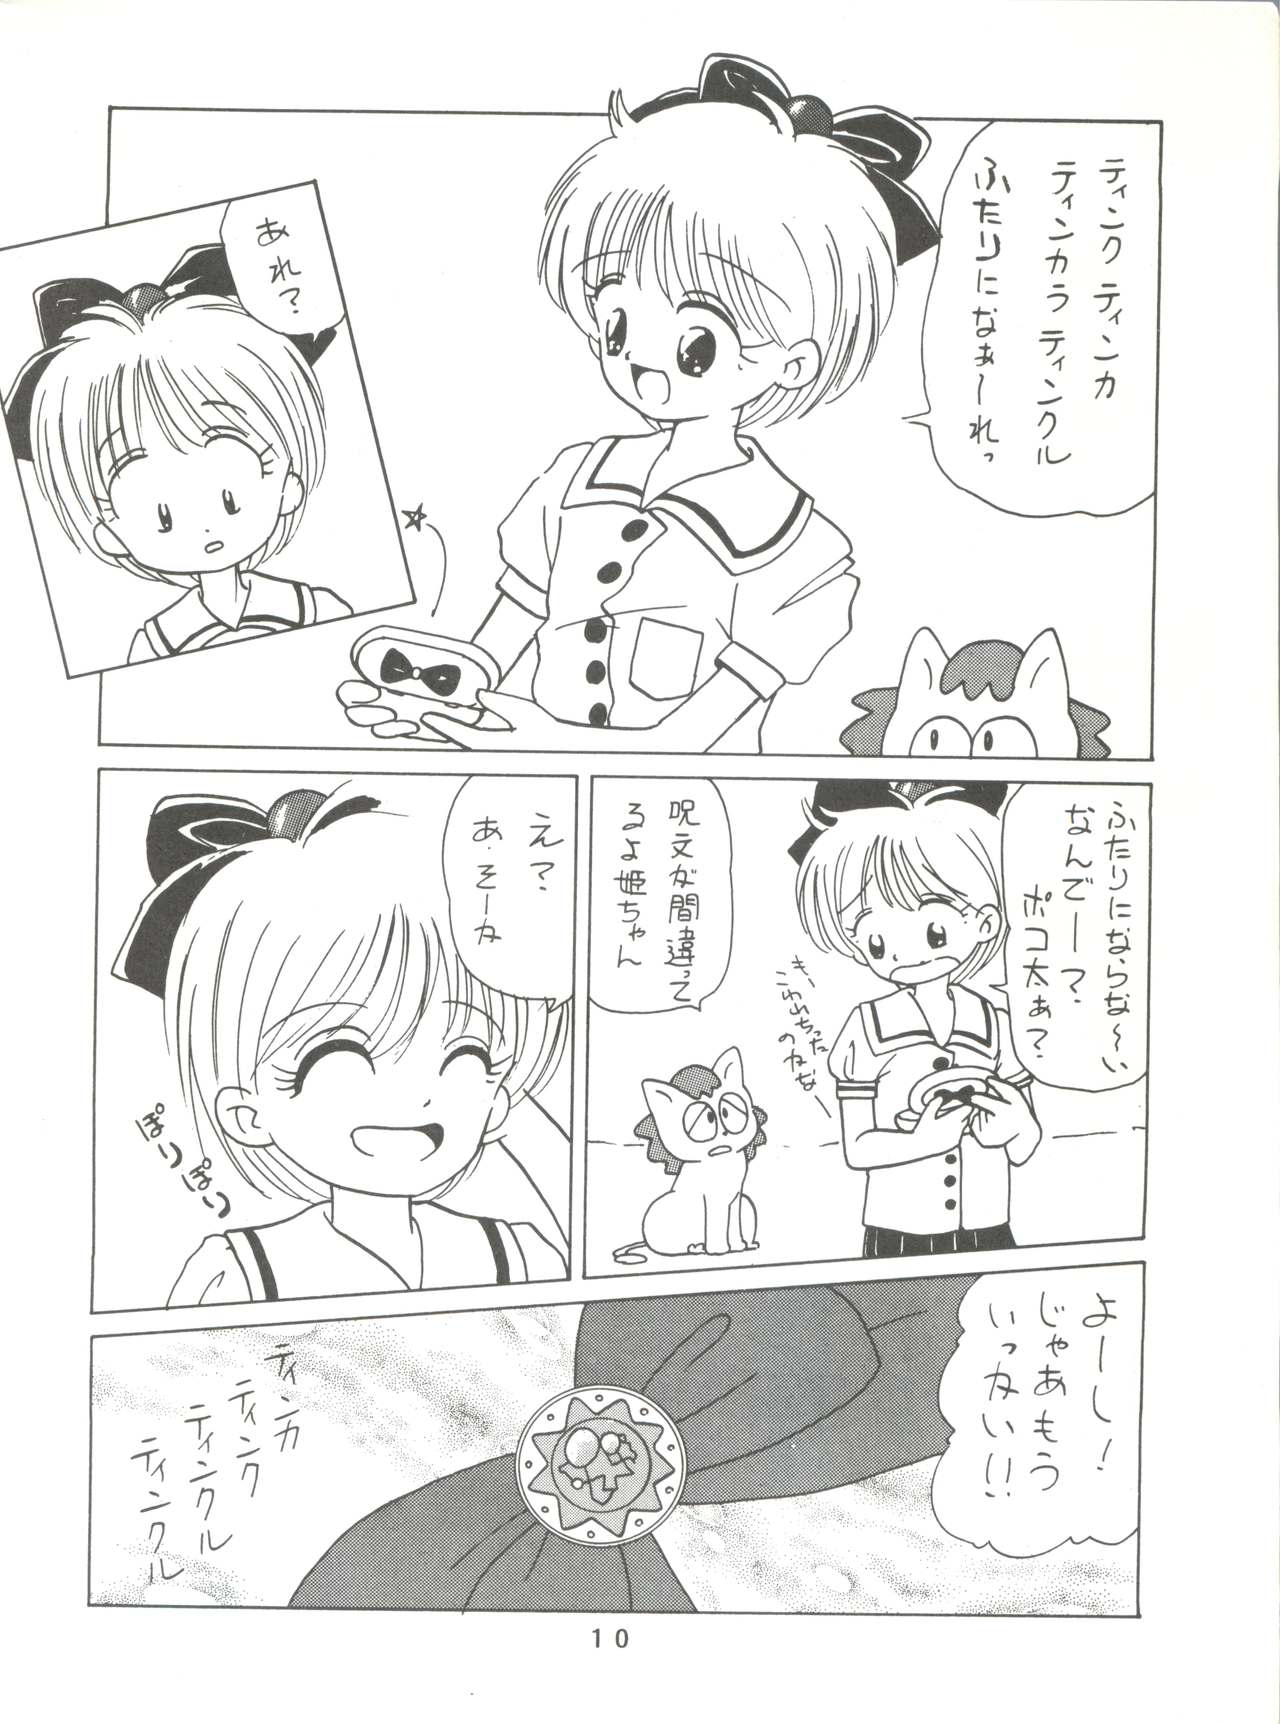 [Mitsuiri House]  MI 16 Mitsuiri House 6 (Hime-chan's Ribbon) + [Ariari no Nashinashi] See You Again 10 (Various) page 10 full